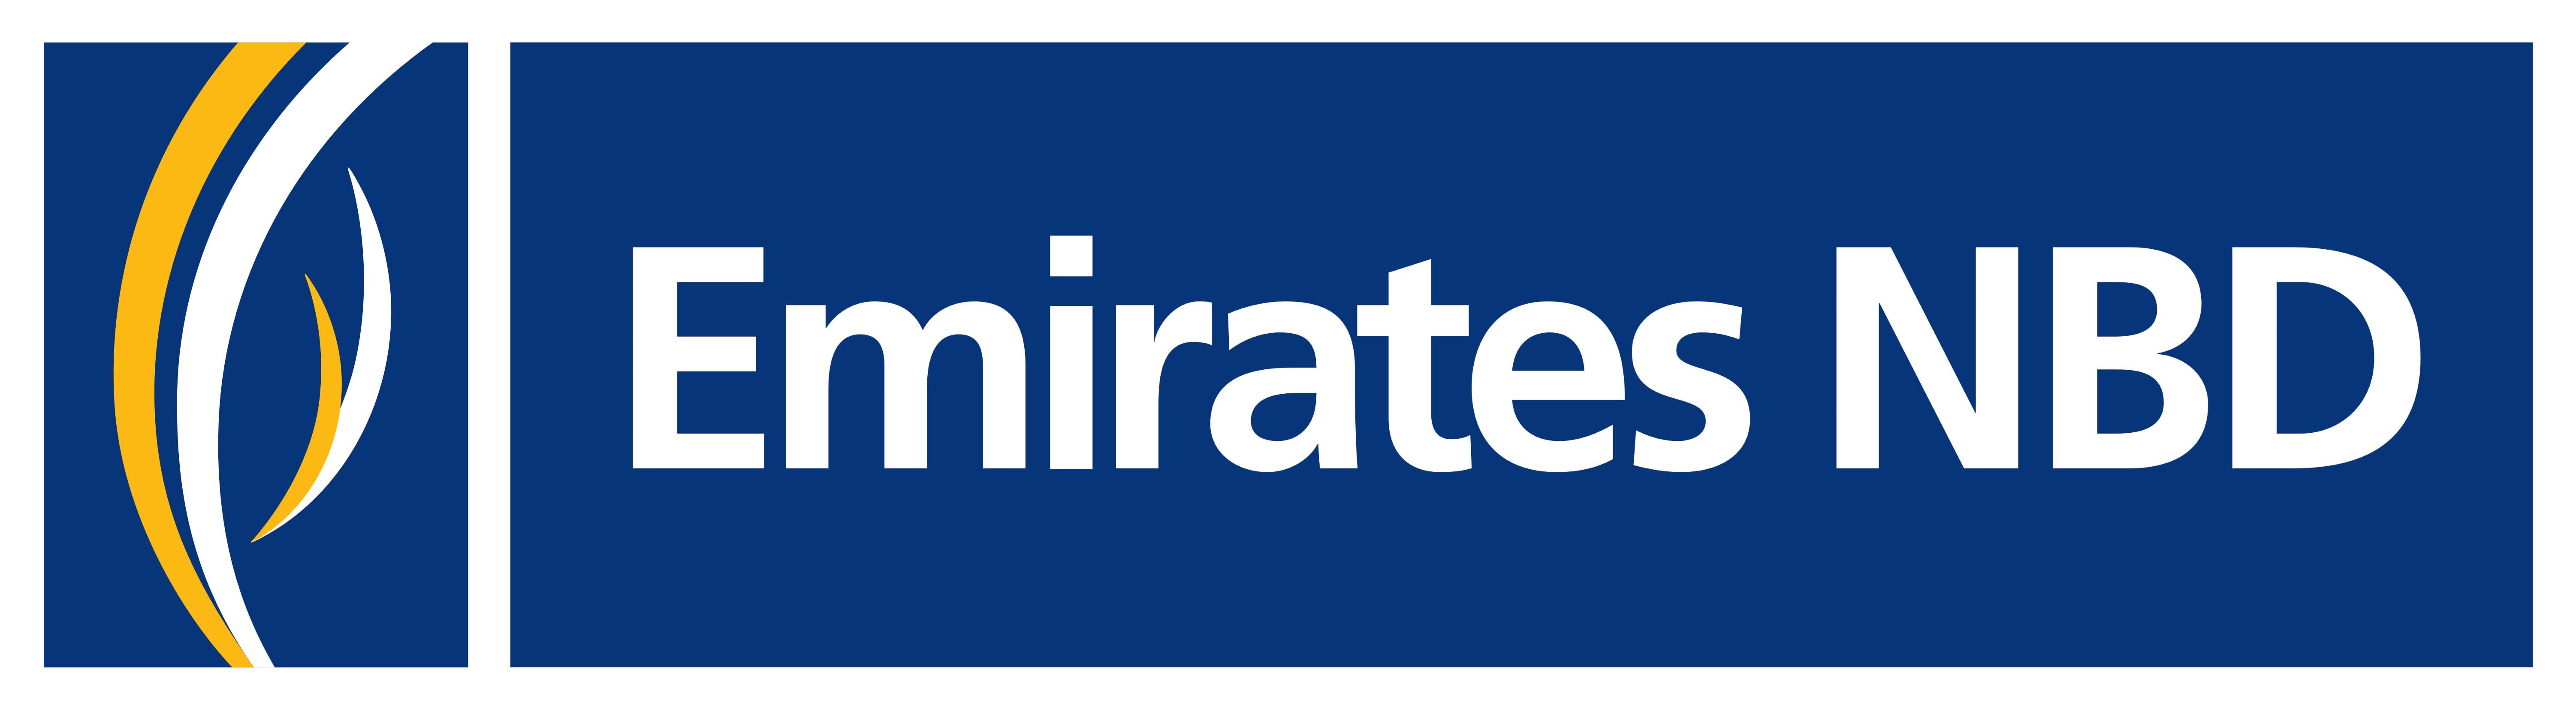 Emirates NBD Brand Logo